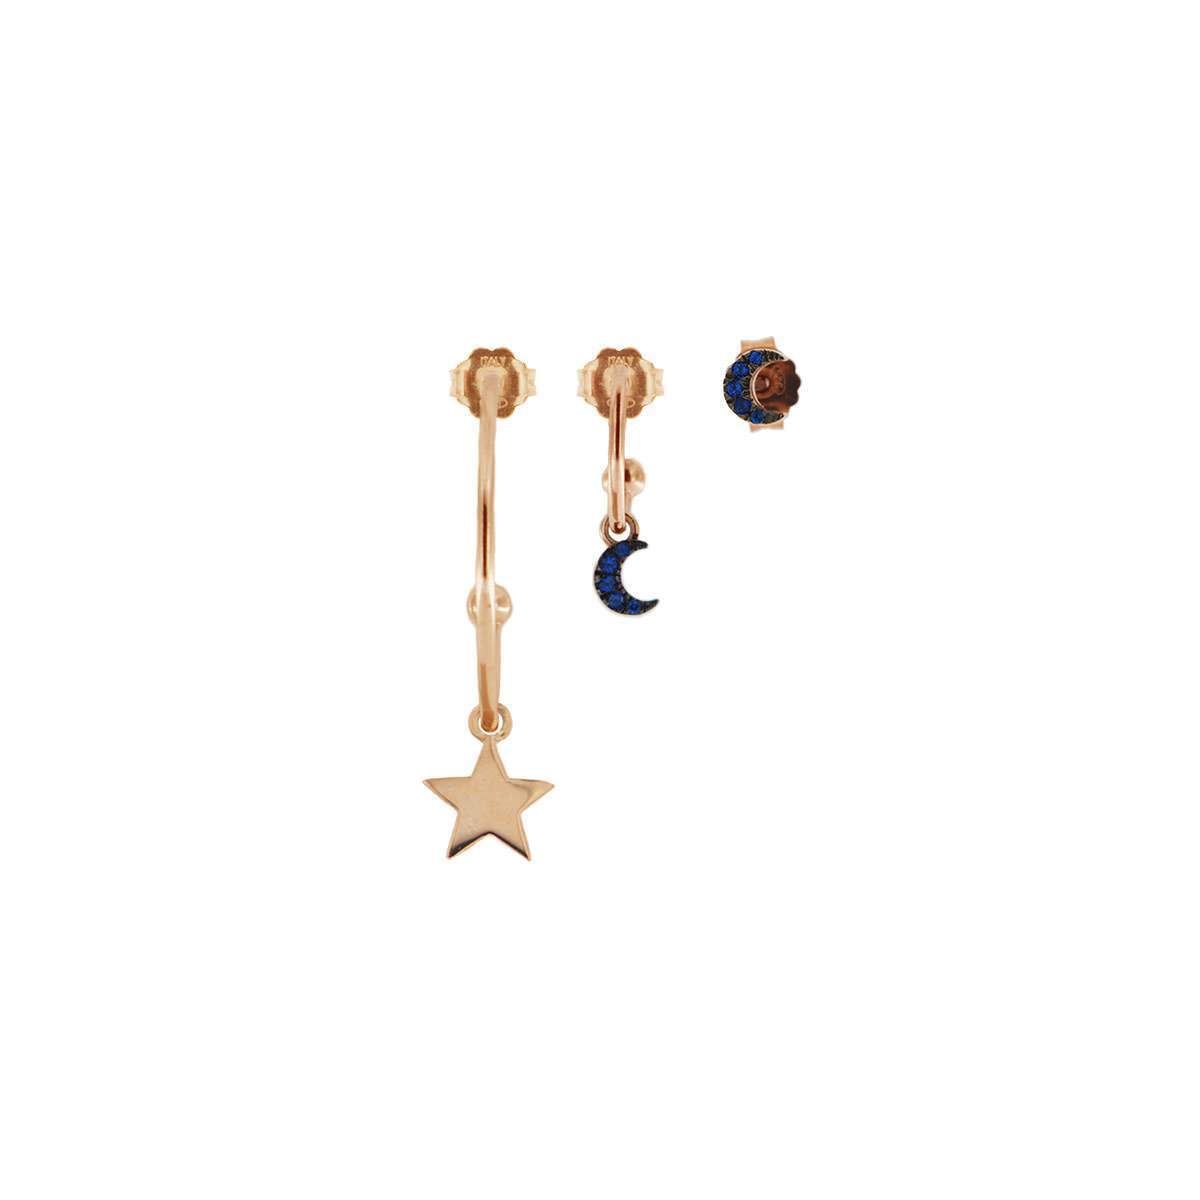 Rue Des Mille orecchini set di 3 pezzi con soggetto Stella / Luna / Luna in argento 925 placcato in oro rosa 18 kt e zirconi blu - Codice orecchini: ORZ-3PZ C5 RSA